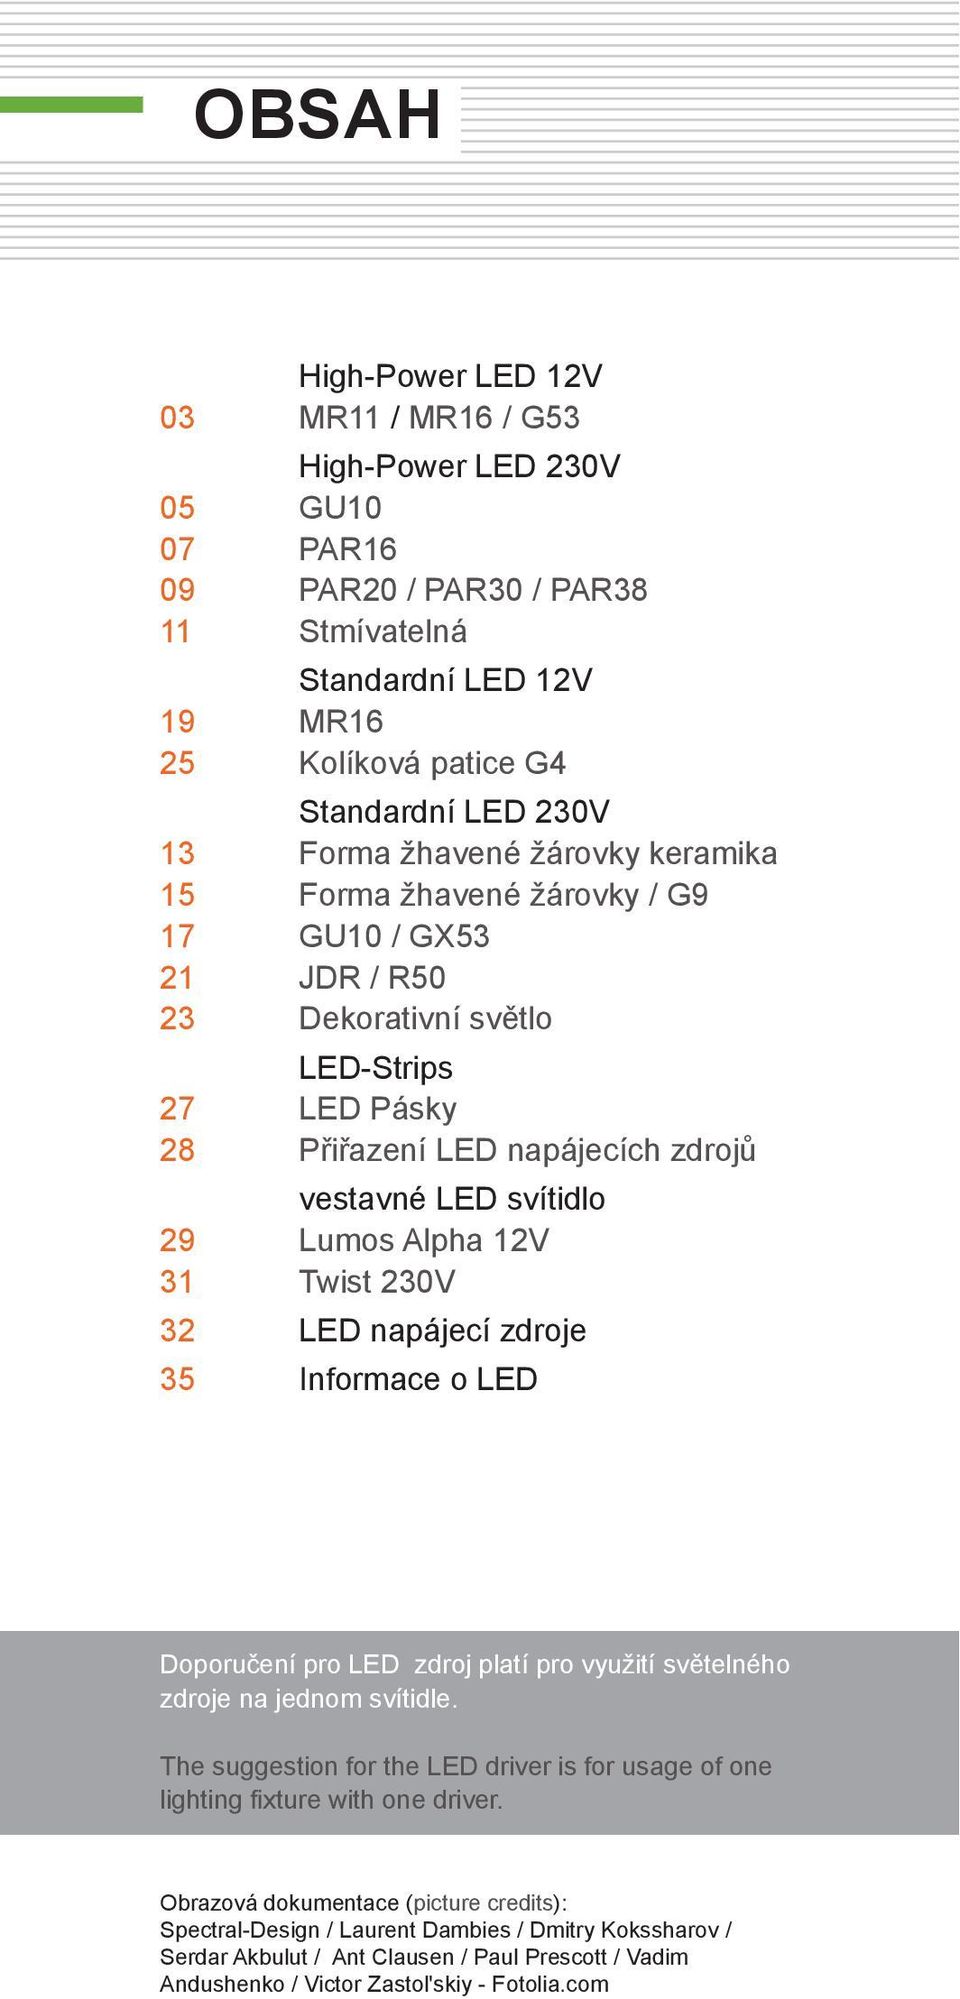 Lumos Alpha 12V 31 Twist 230V 32 LED napájecí zdroje 35 Informace o LED Doporučení pro LED zdroj platí pro využití světelného zdroje na jednom svítidle.